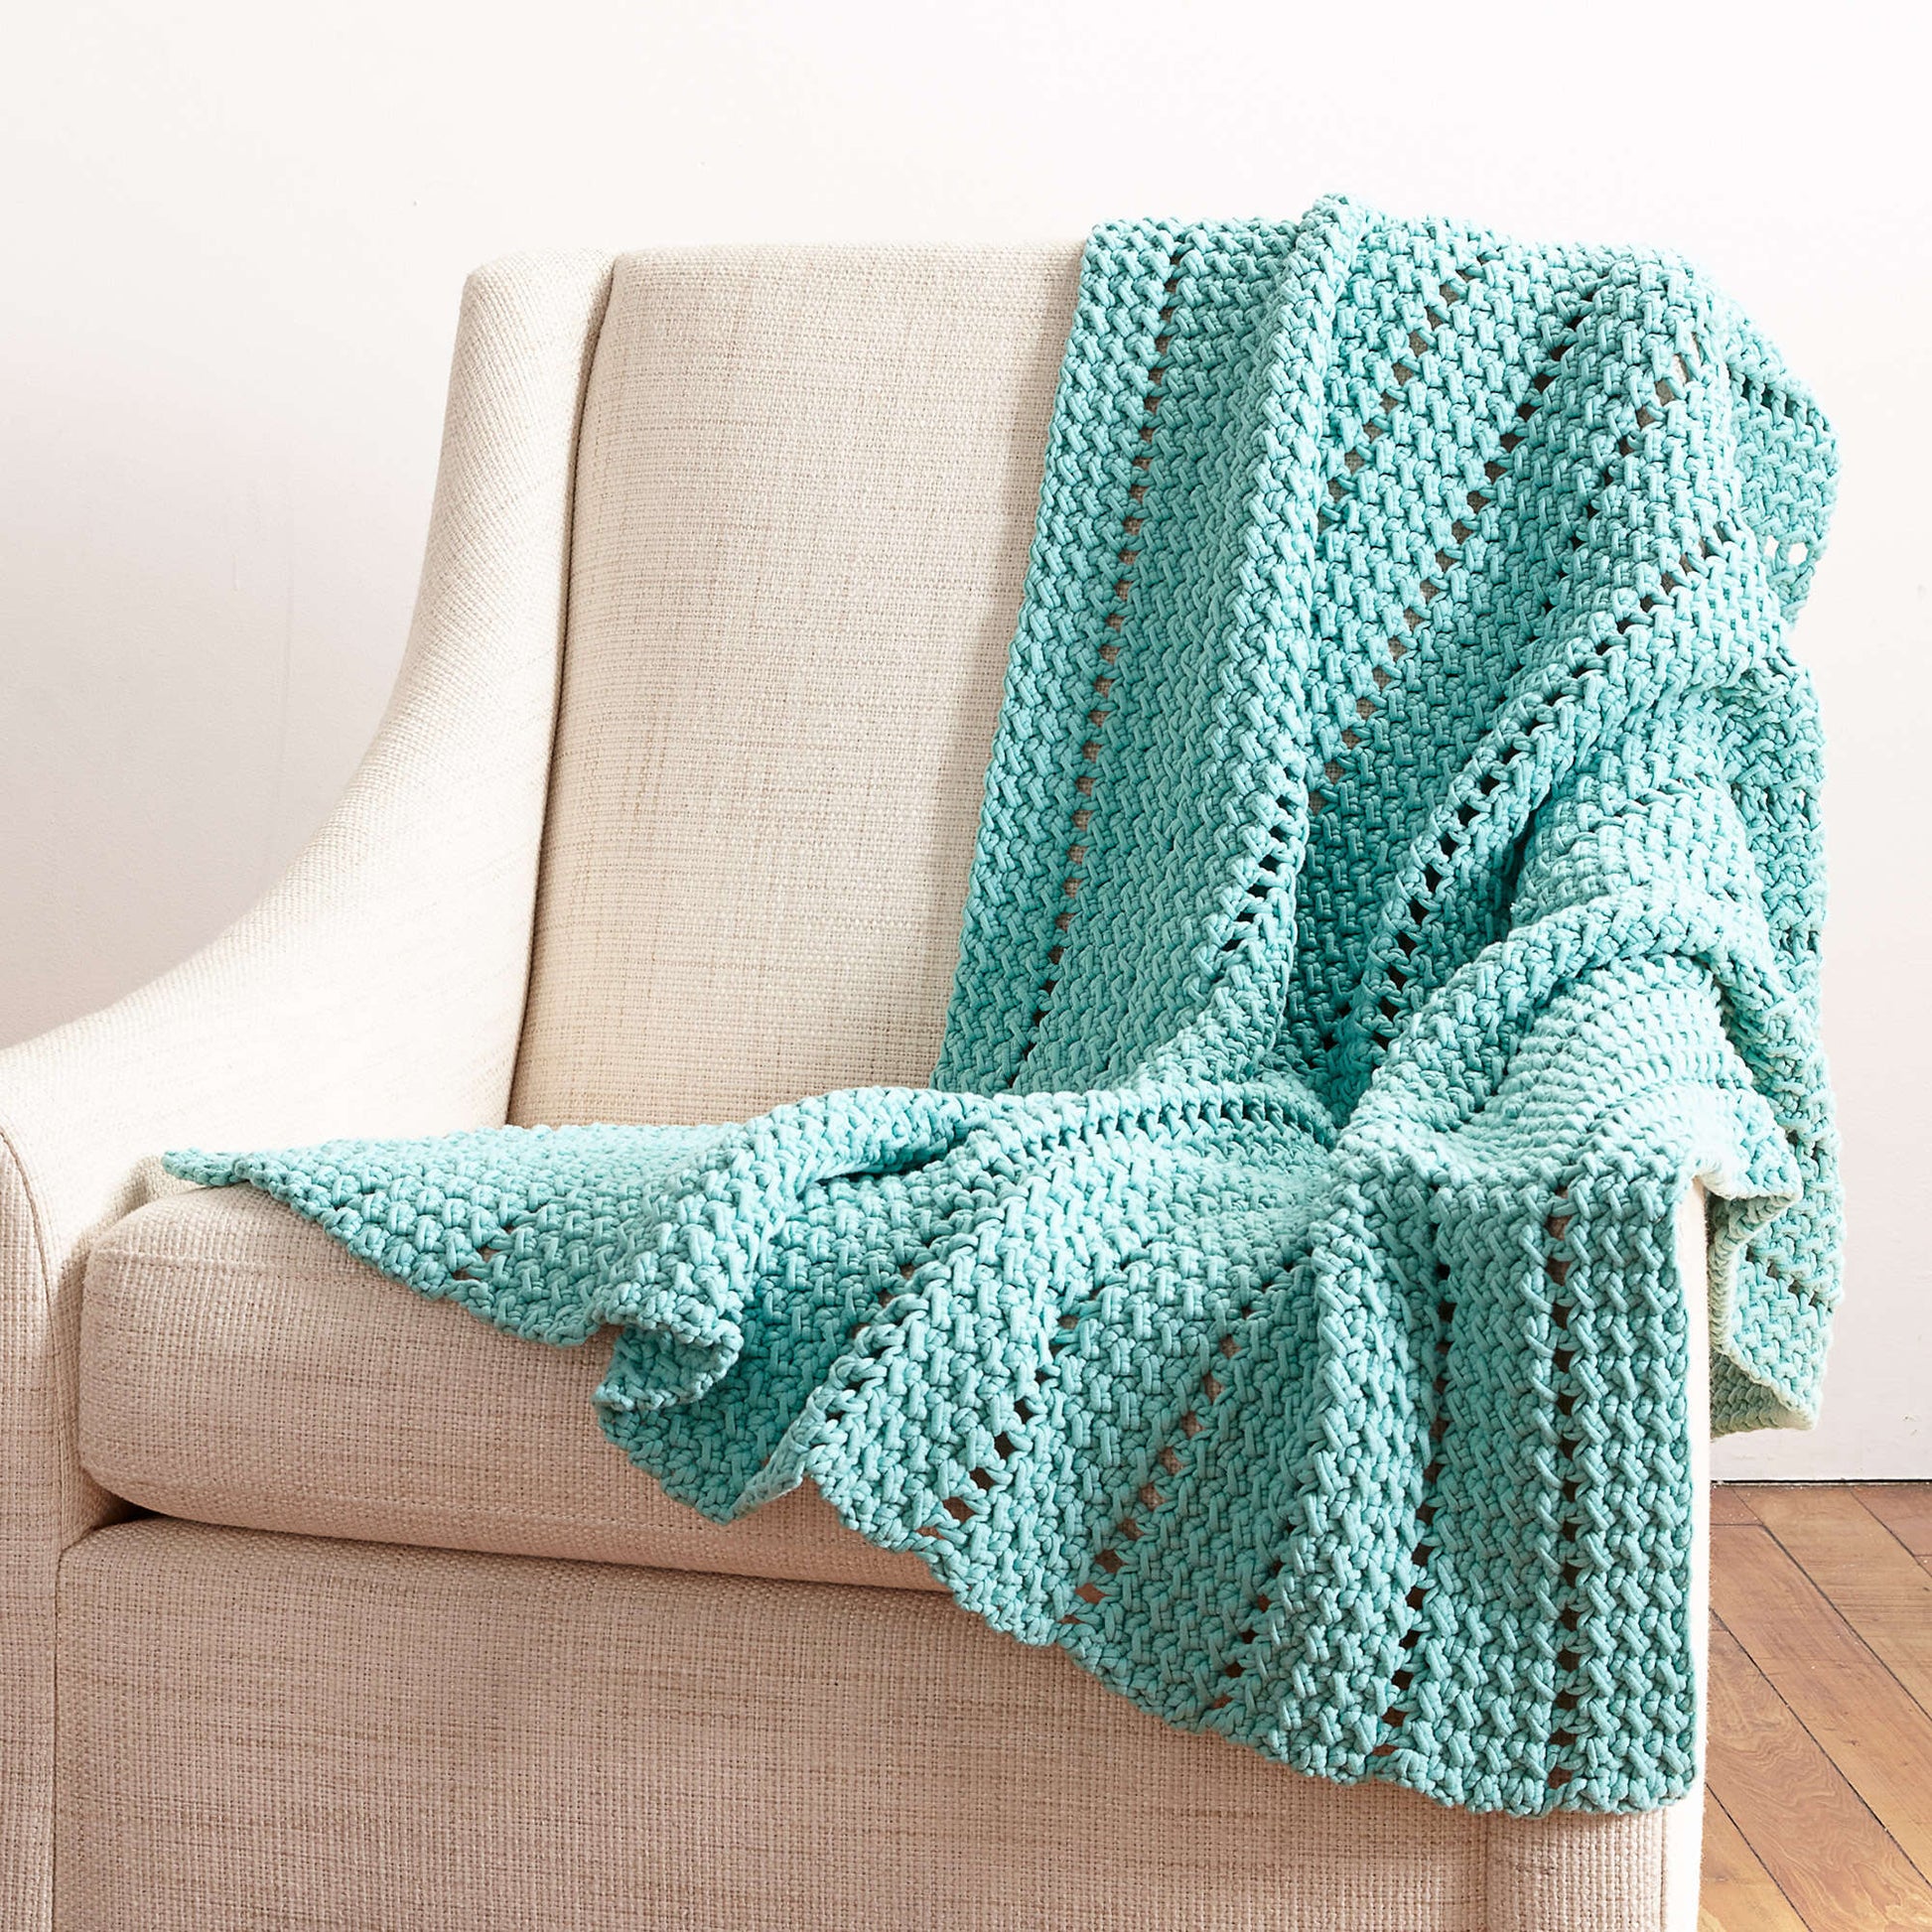 Bernat Eyelets And Textures Crochet Blanket Crochet Blanket made in Bernat Maker Home Dec yarn